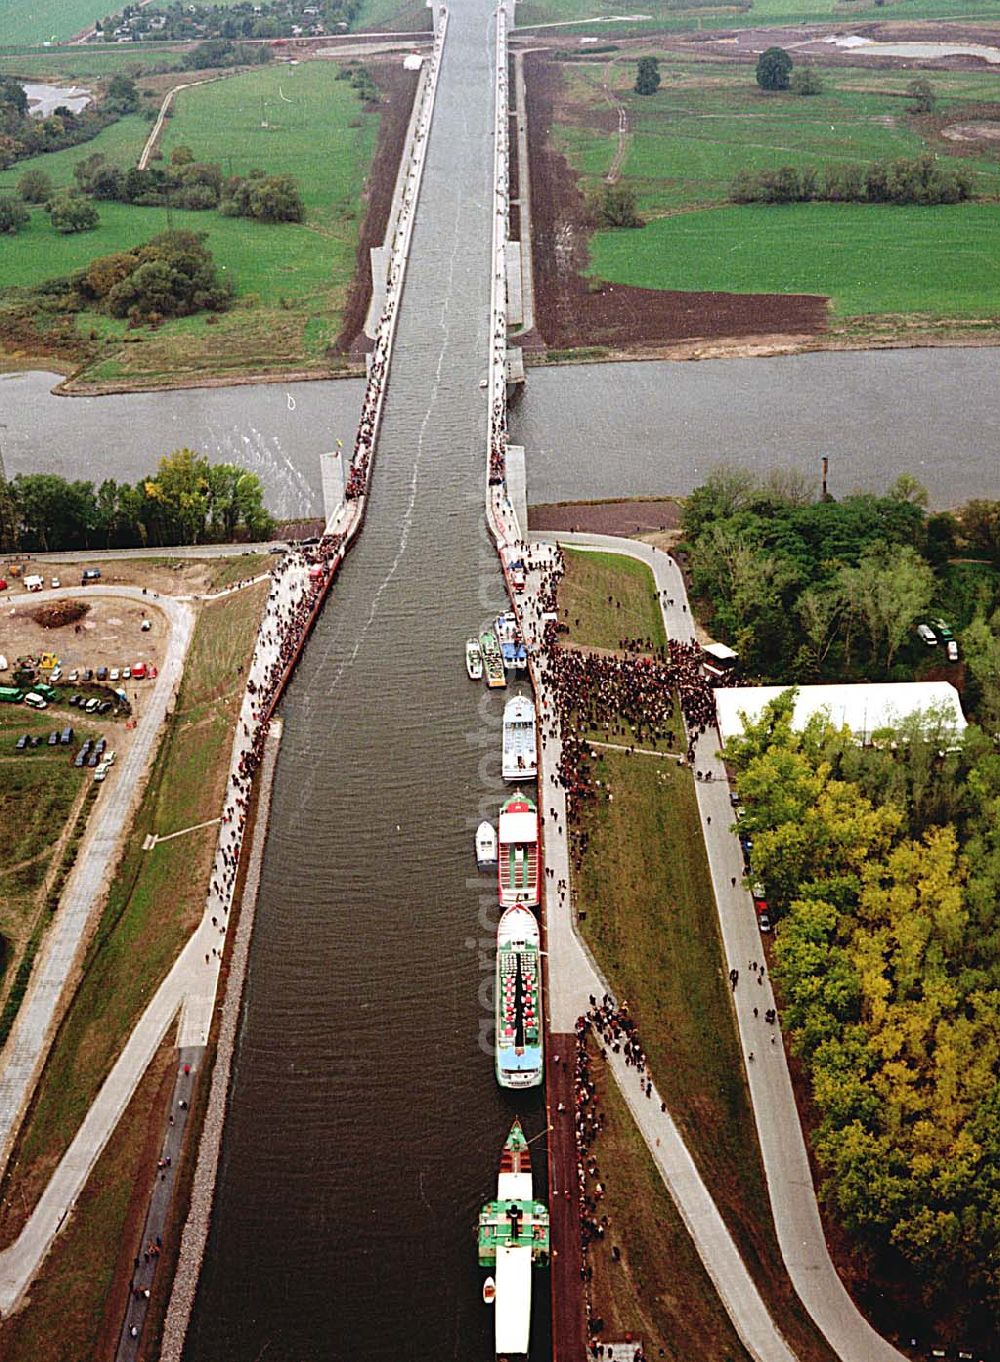 Hohenwarthe / Sachsen-Anhalt from above - Verkehrsfreigabe des Wasserstraßenkreuzes Magdeburg entlang der Kanalbrücke vom Mittellandkanal zum Elbe-Havel-Kanal über die Elbe bei Hohenwarthe in Sachsen-Anhalt.